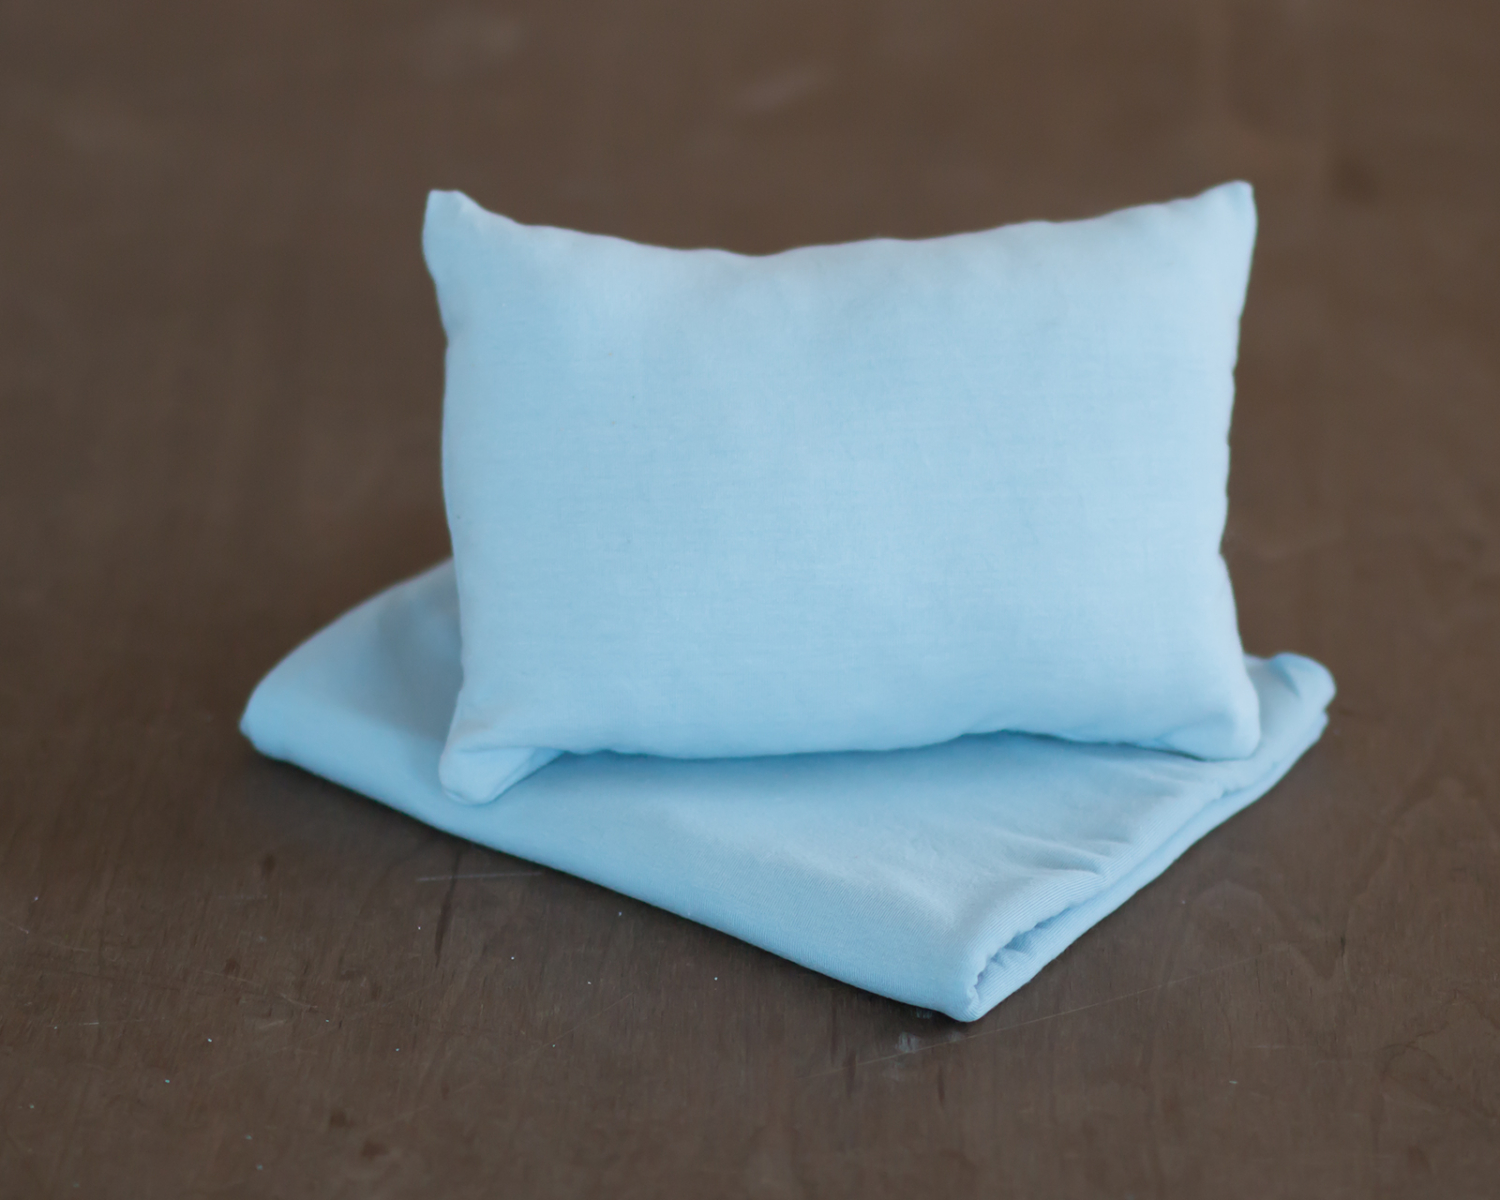 Light blue posing pillow - newborn photo prop